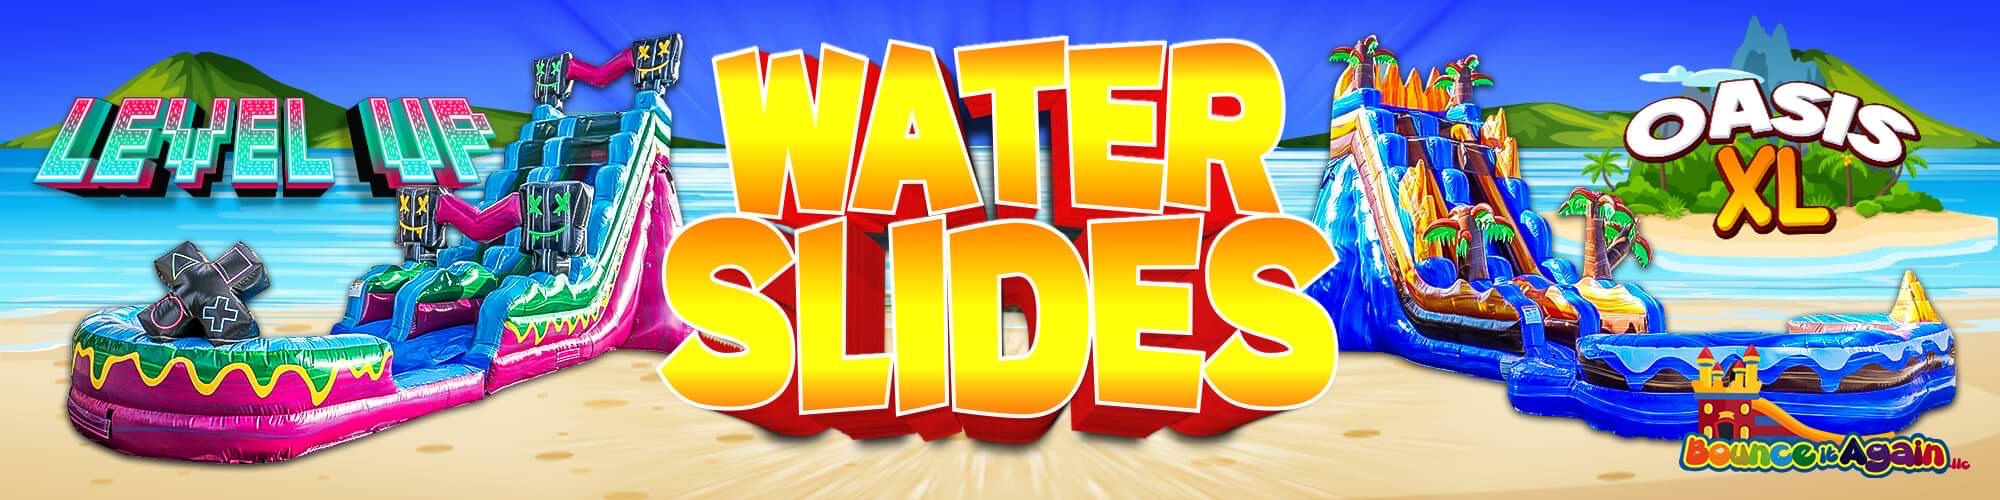 Winterhaven Water Slide Rentals